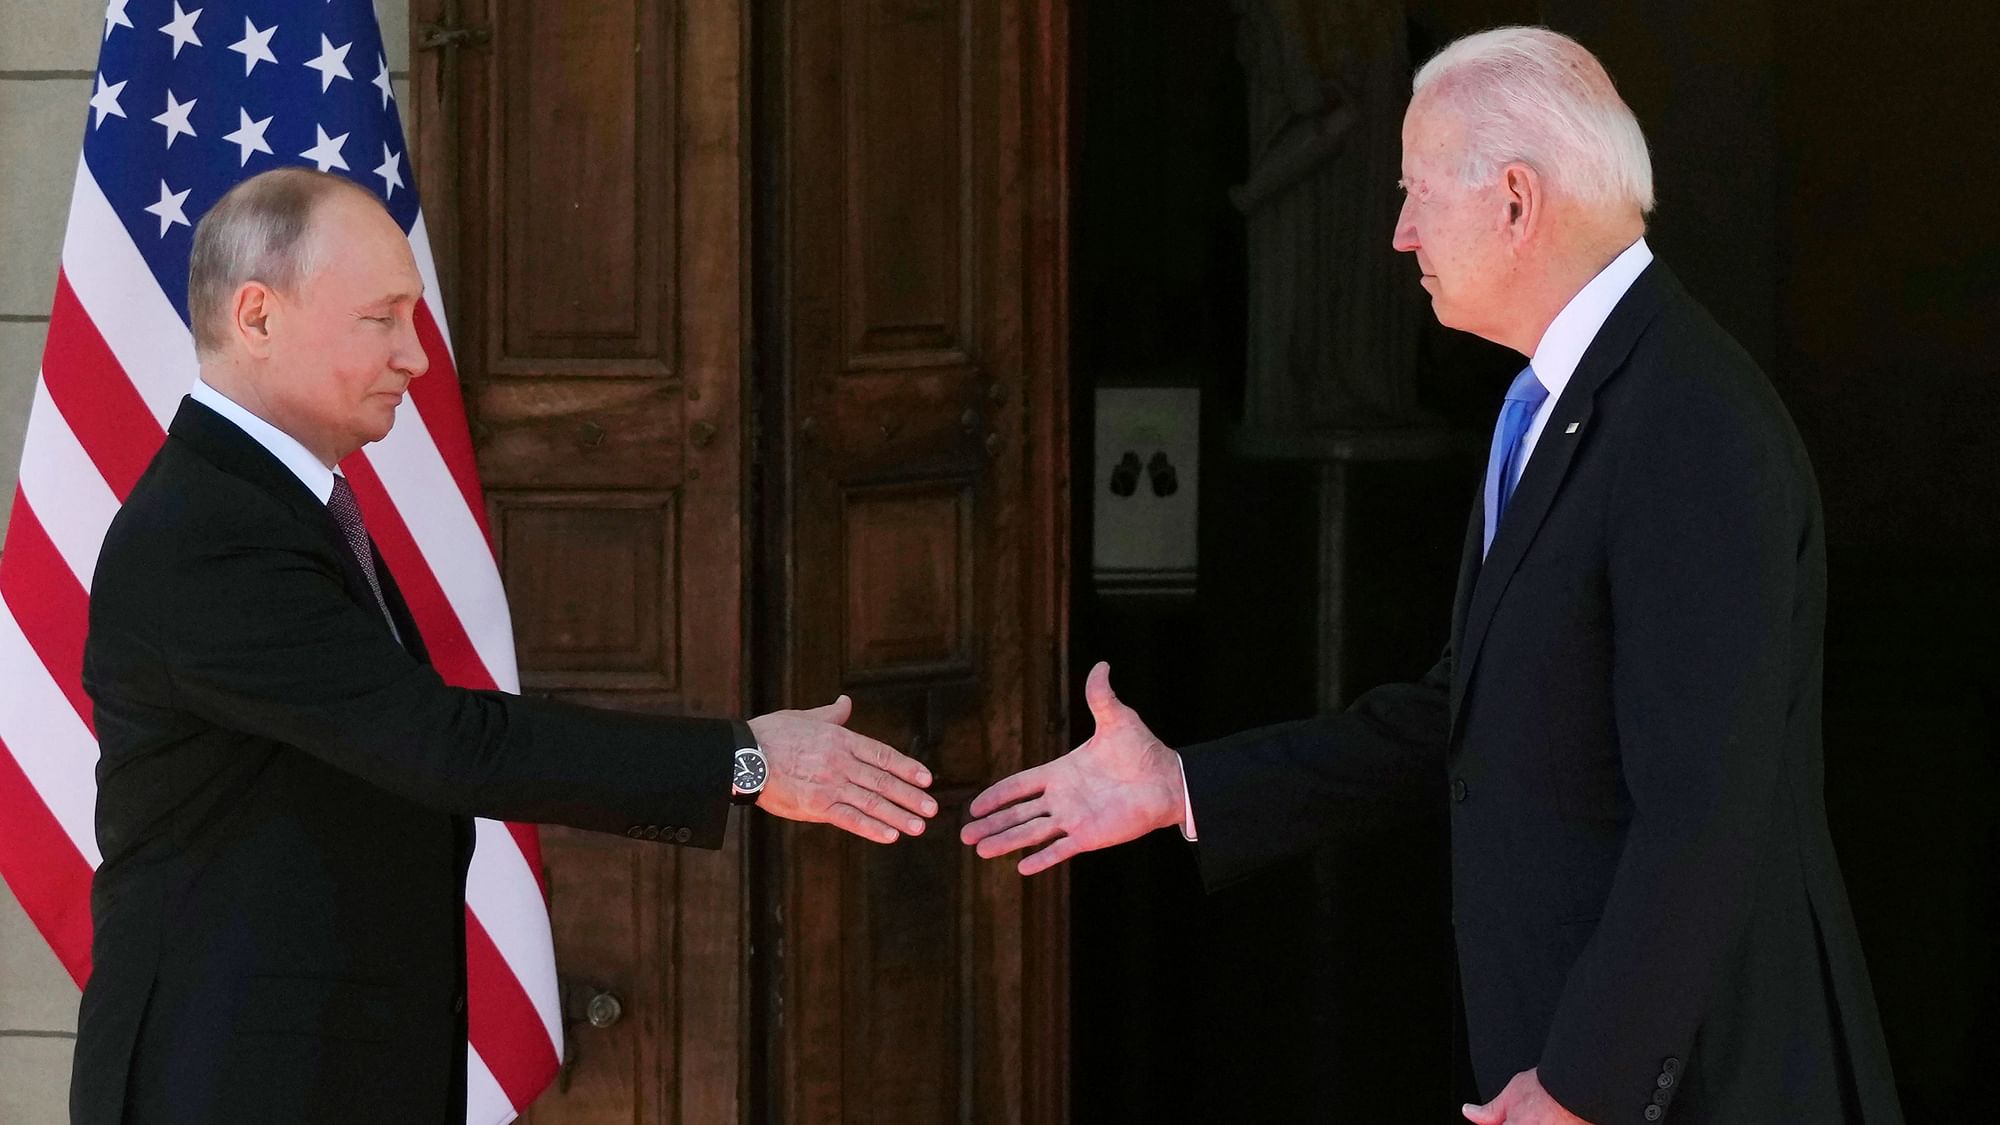 Joe Biden और Vladimir Putin की मुलाकात के बाद संबंध सुधरे?